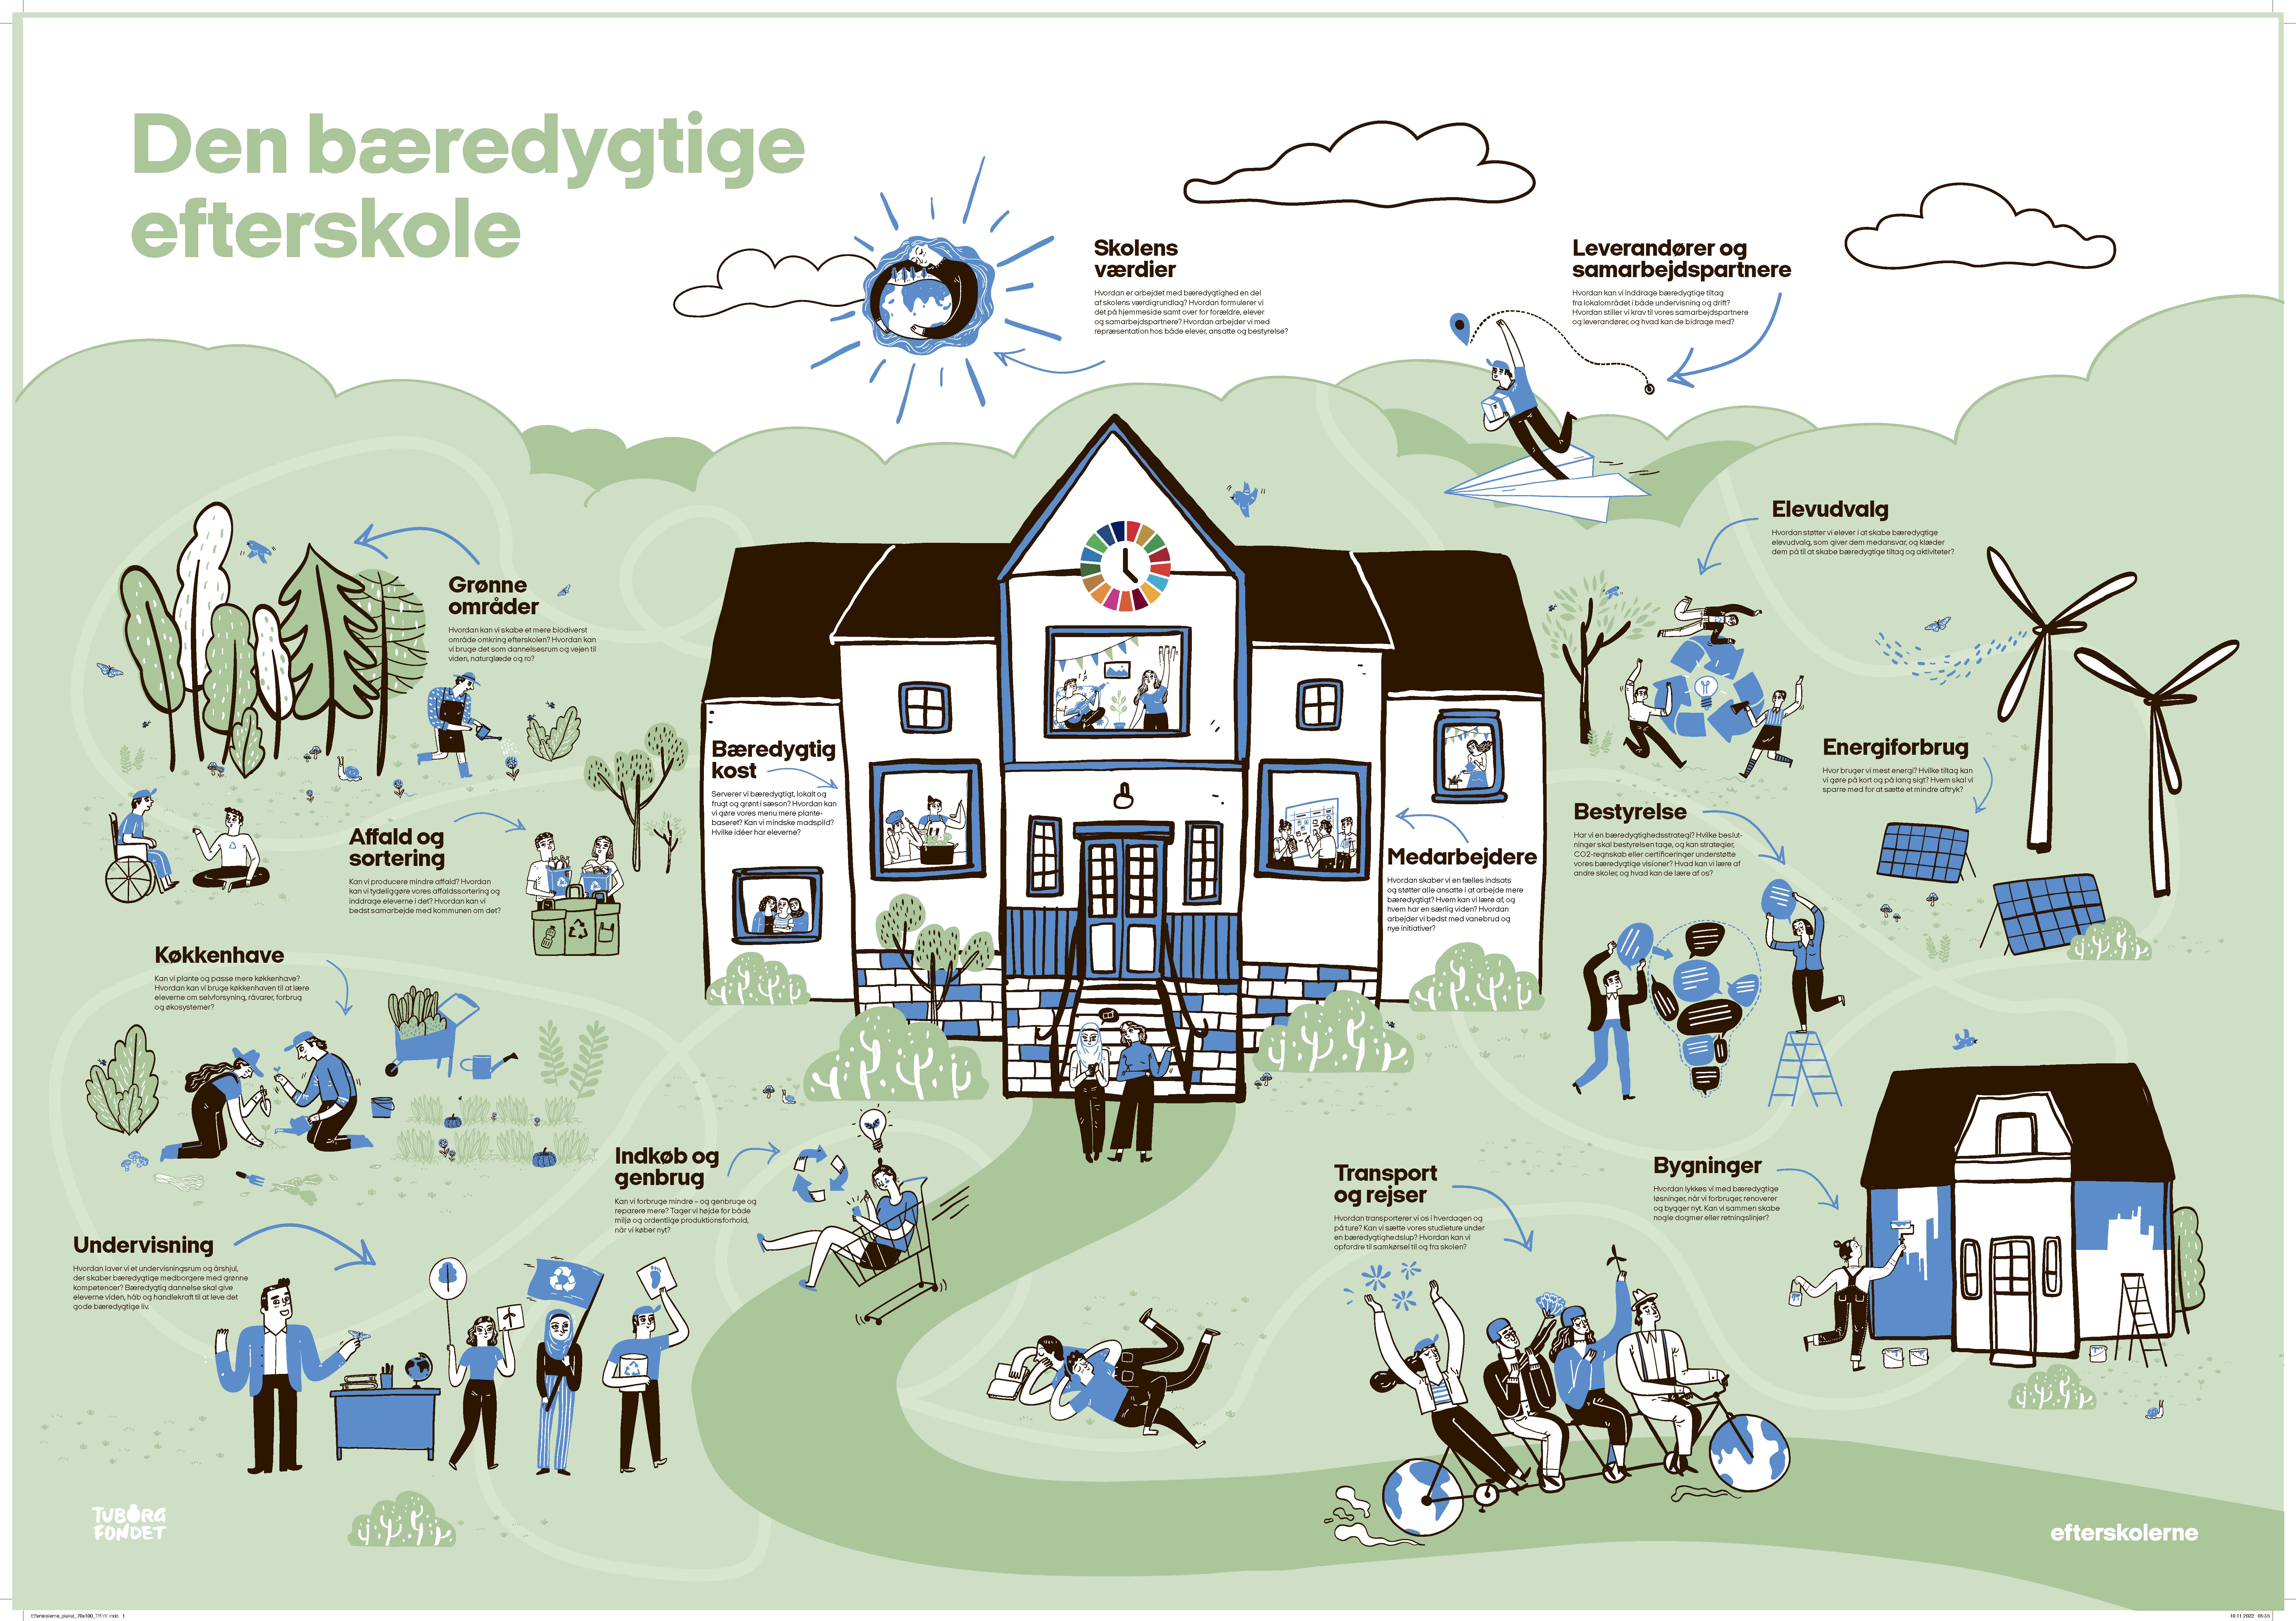 Plakat den bæredygtige efterskole